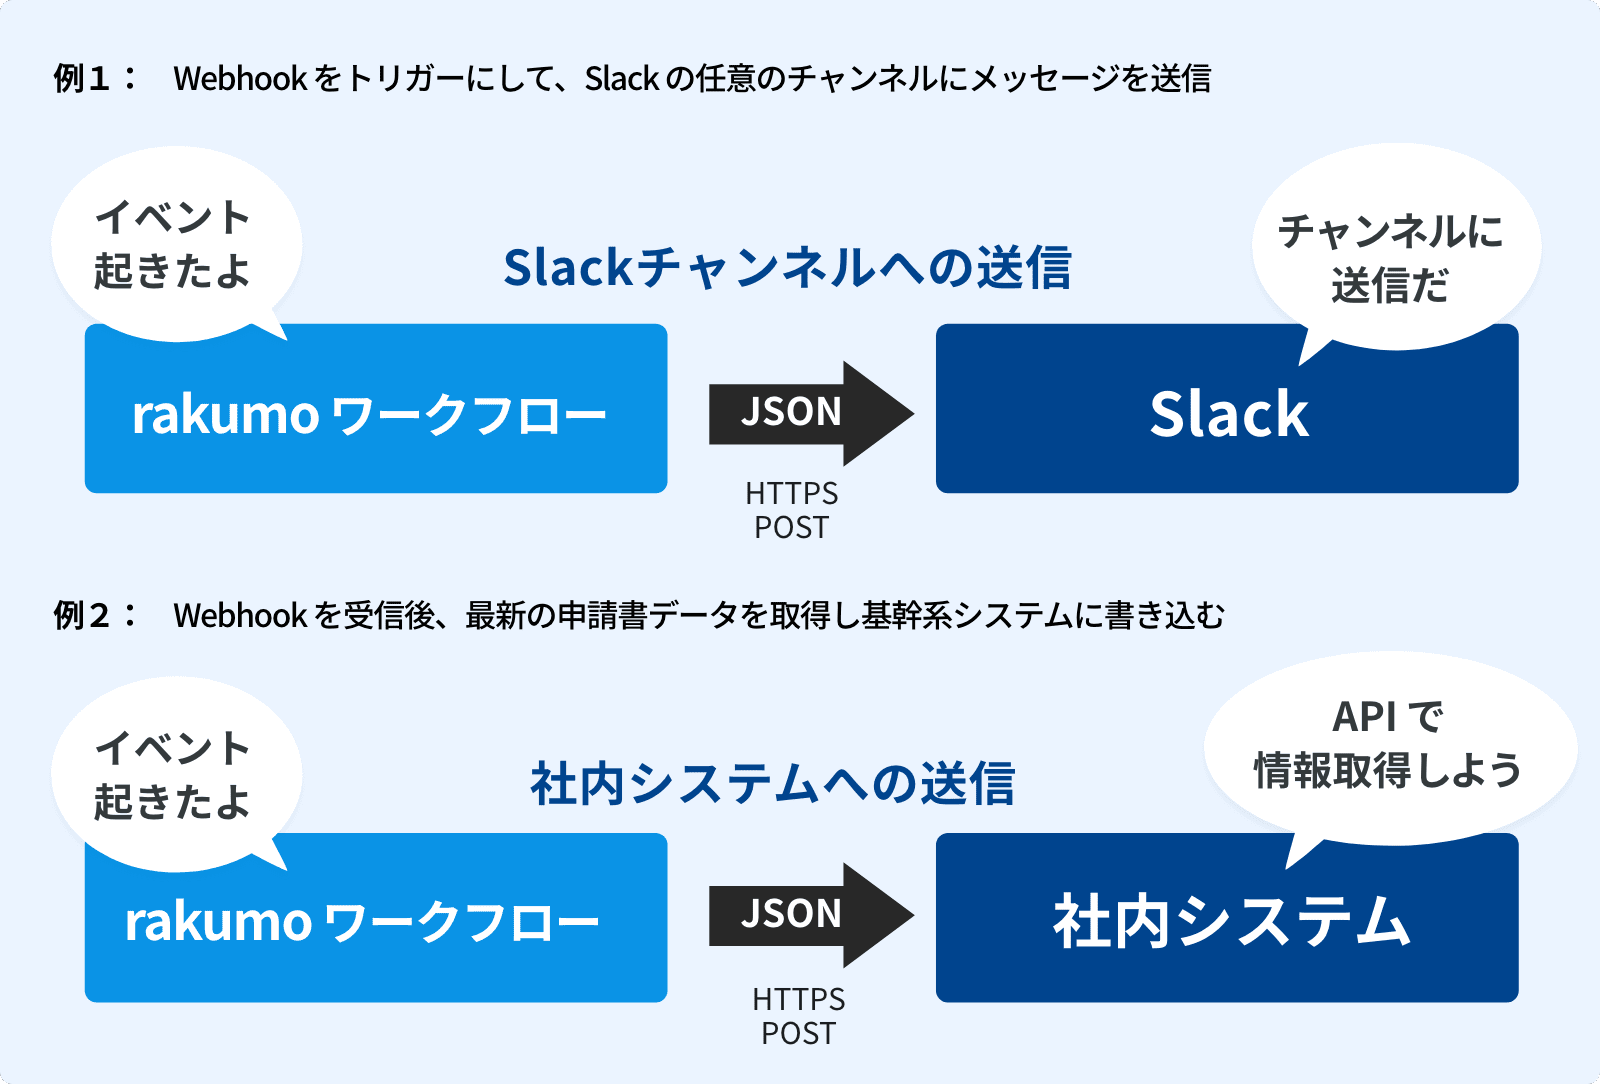 rakumo ワークフロー Slack チャンネルへの送信イメージ、社内システムへの送信イメージ